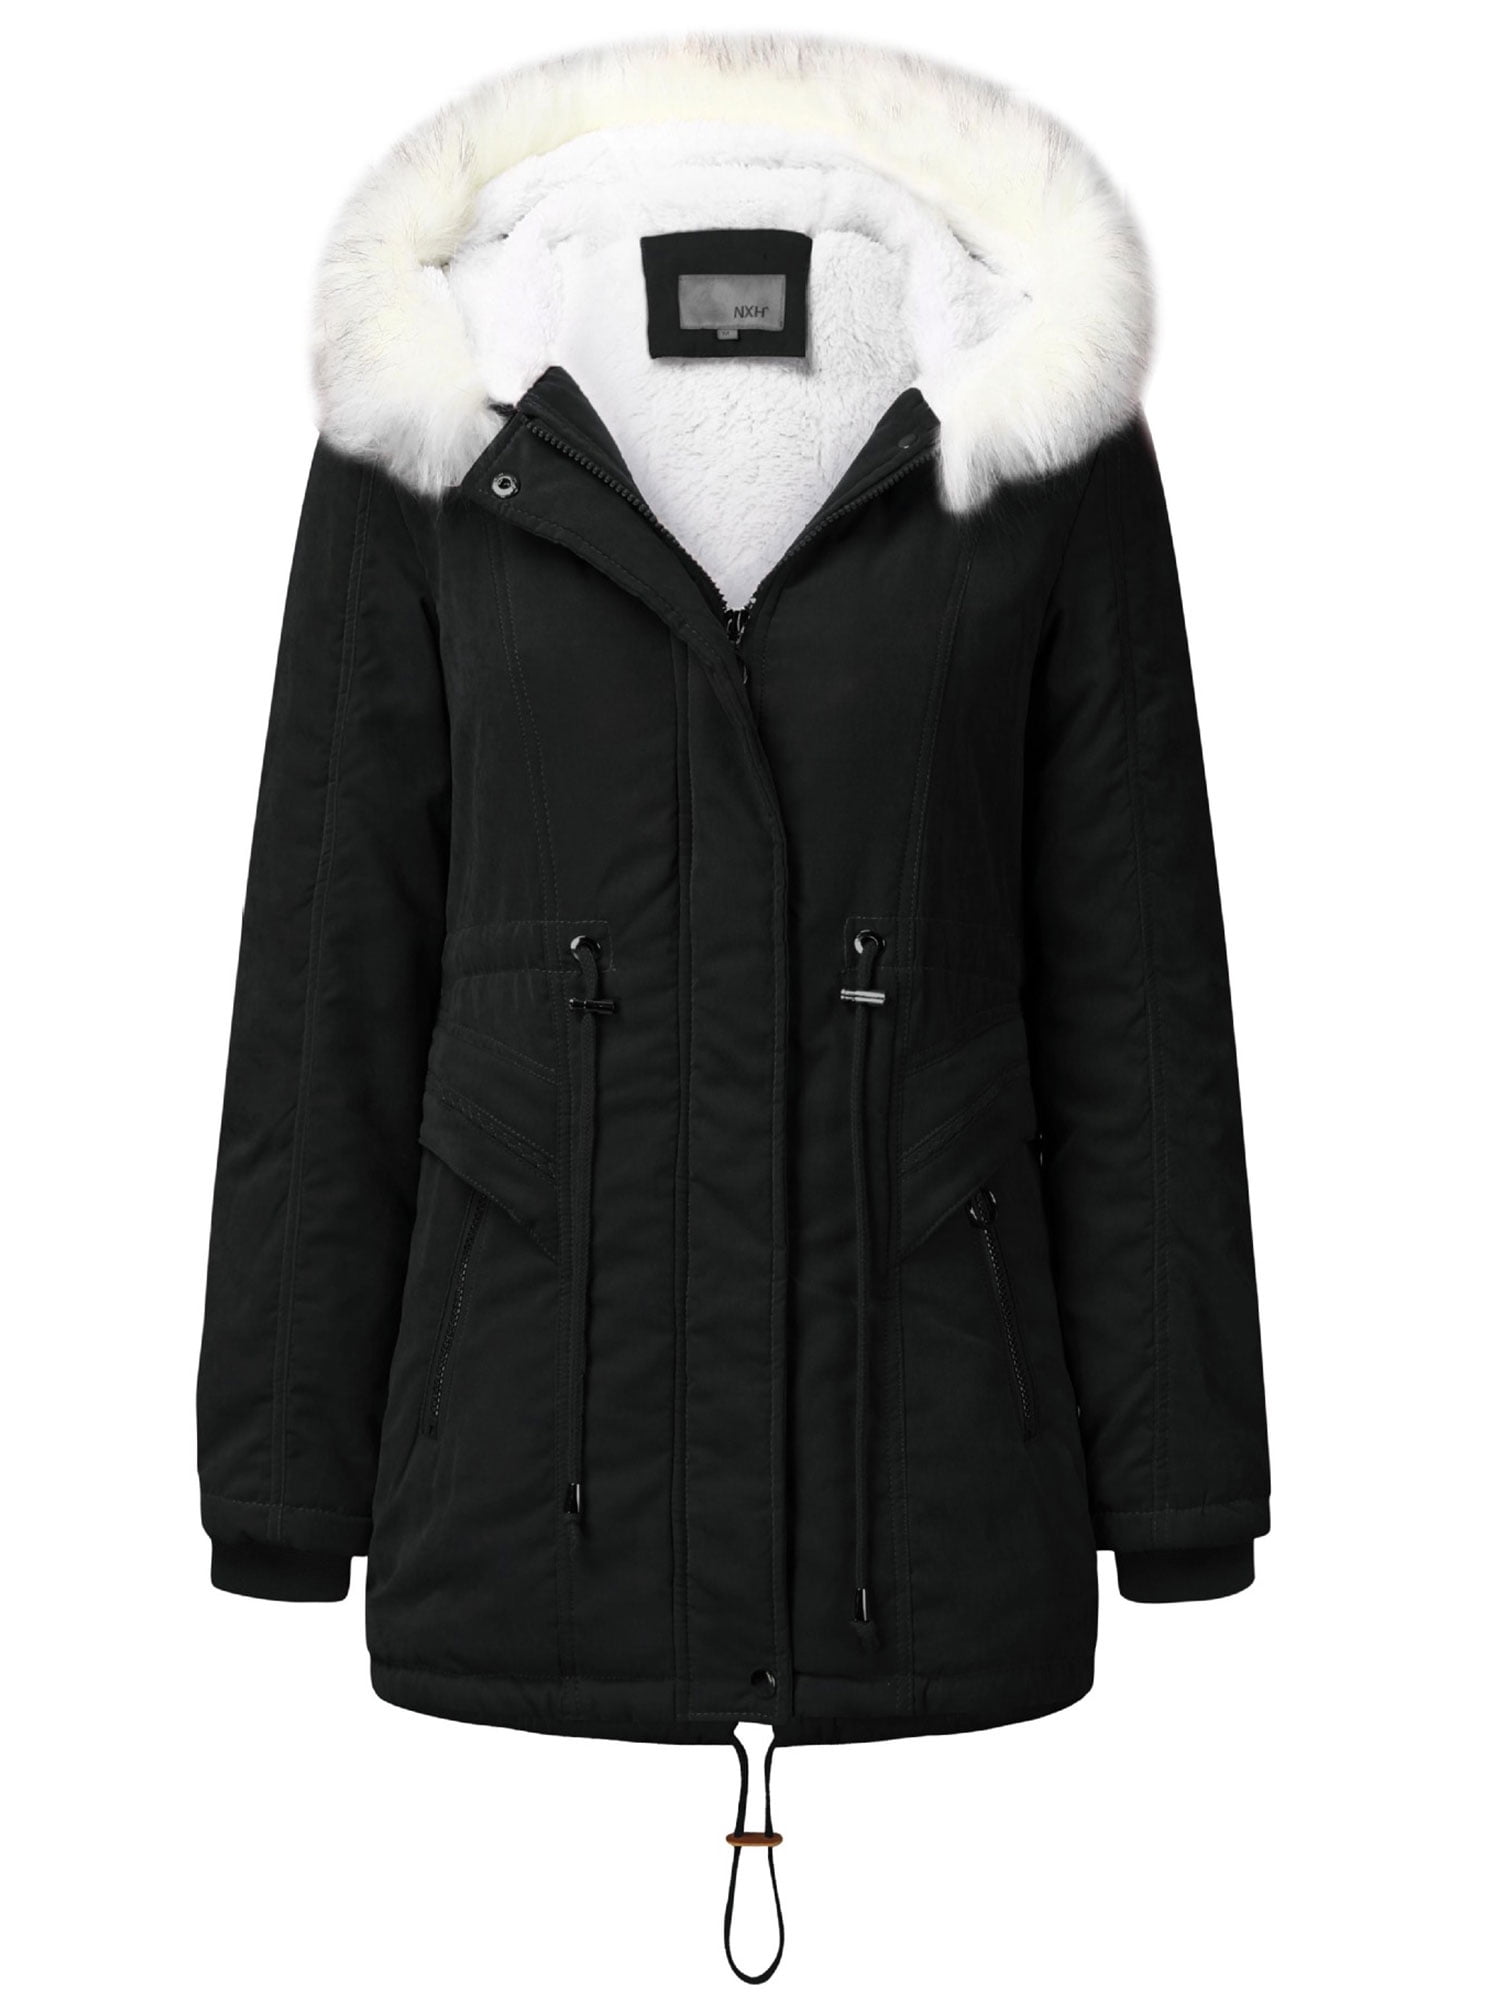 Women's Coat Fur Lined Trench Winter  Outwear Warm Jacket Hooded Parka Overcoat